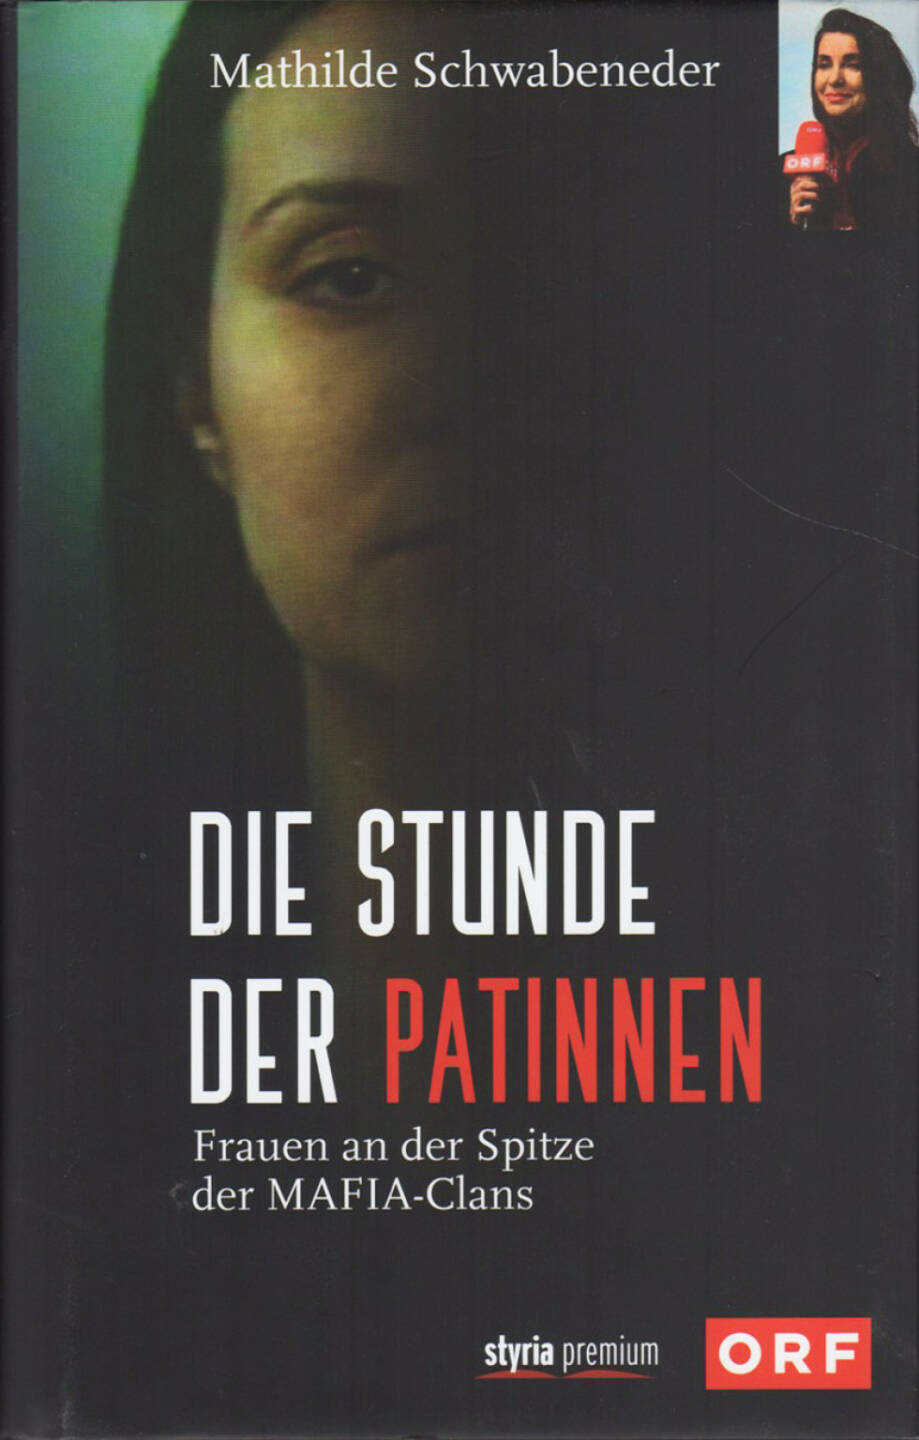 Mathilde Schwabeneder-Hain - Die Stunde der Patinnen: Frauen an der Spitze der Mafia-Clans - http://boerse-social.com/financebooks/show/mathilde_schwabeneder-hain_-_die_stunde_der_patinnen_frauen_an_der_spitze_der_mafia-clans